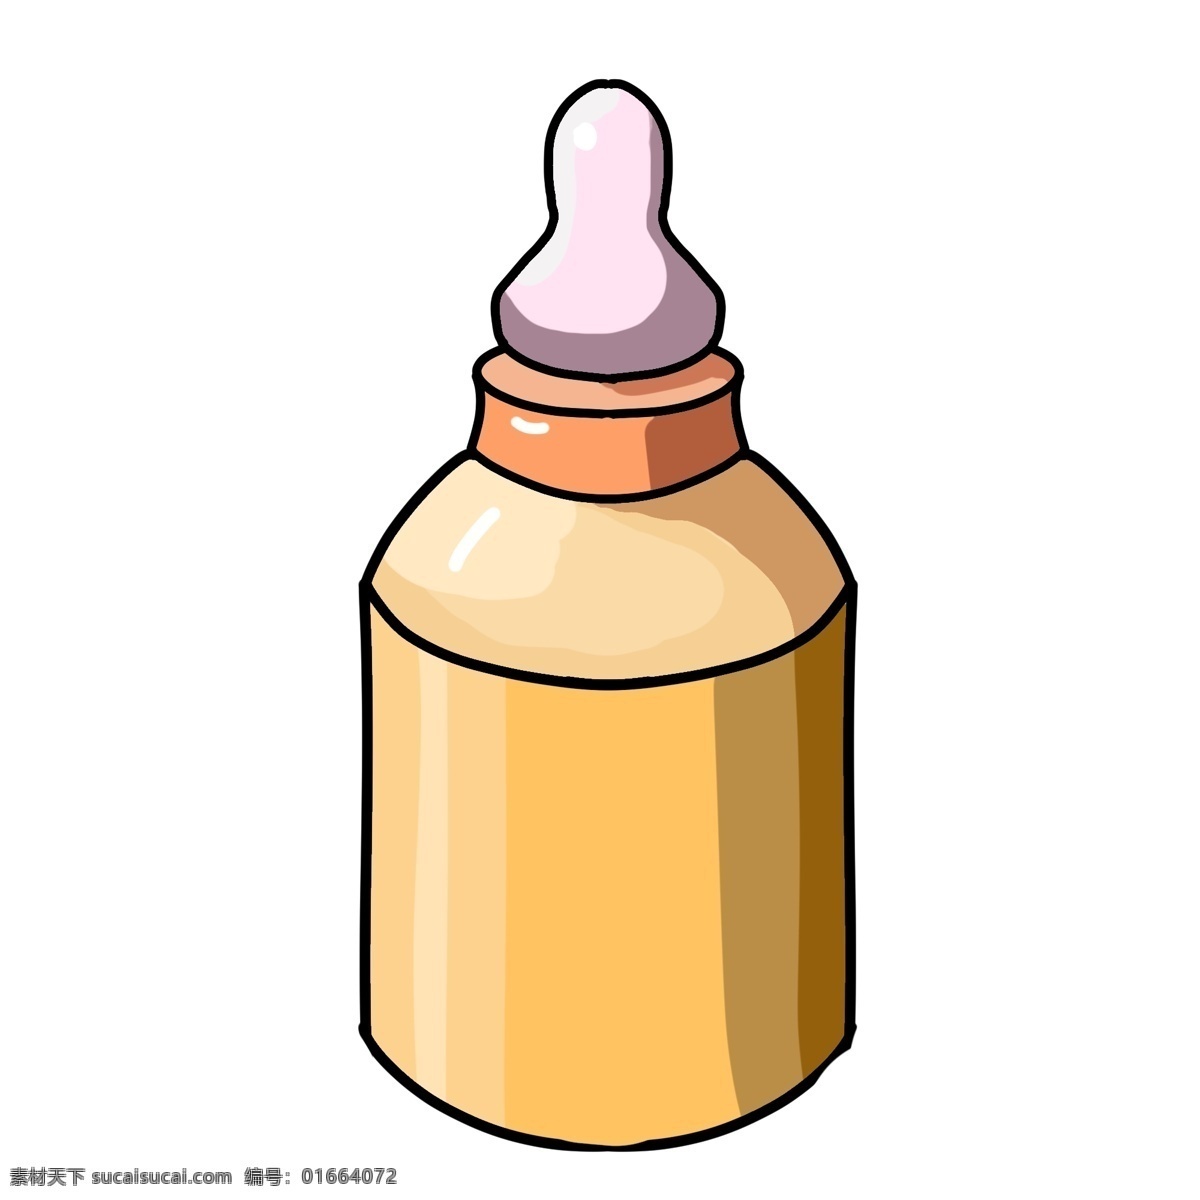 可爱 婴儿 奶瓶 插图 可爱的奶瓶 婴儿奶瓶 婴儿专用 粉色的奶嘴 黄色的瓶子 婴儿用品 卡通奶瓶